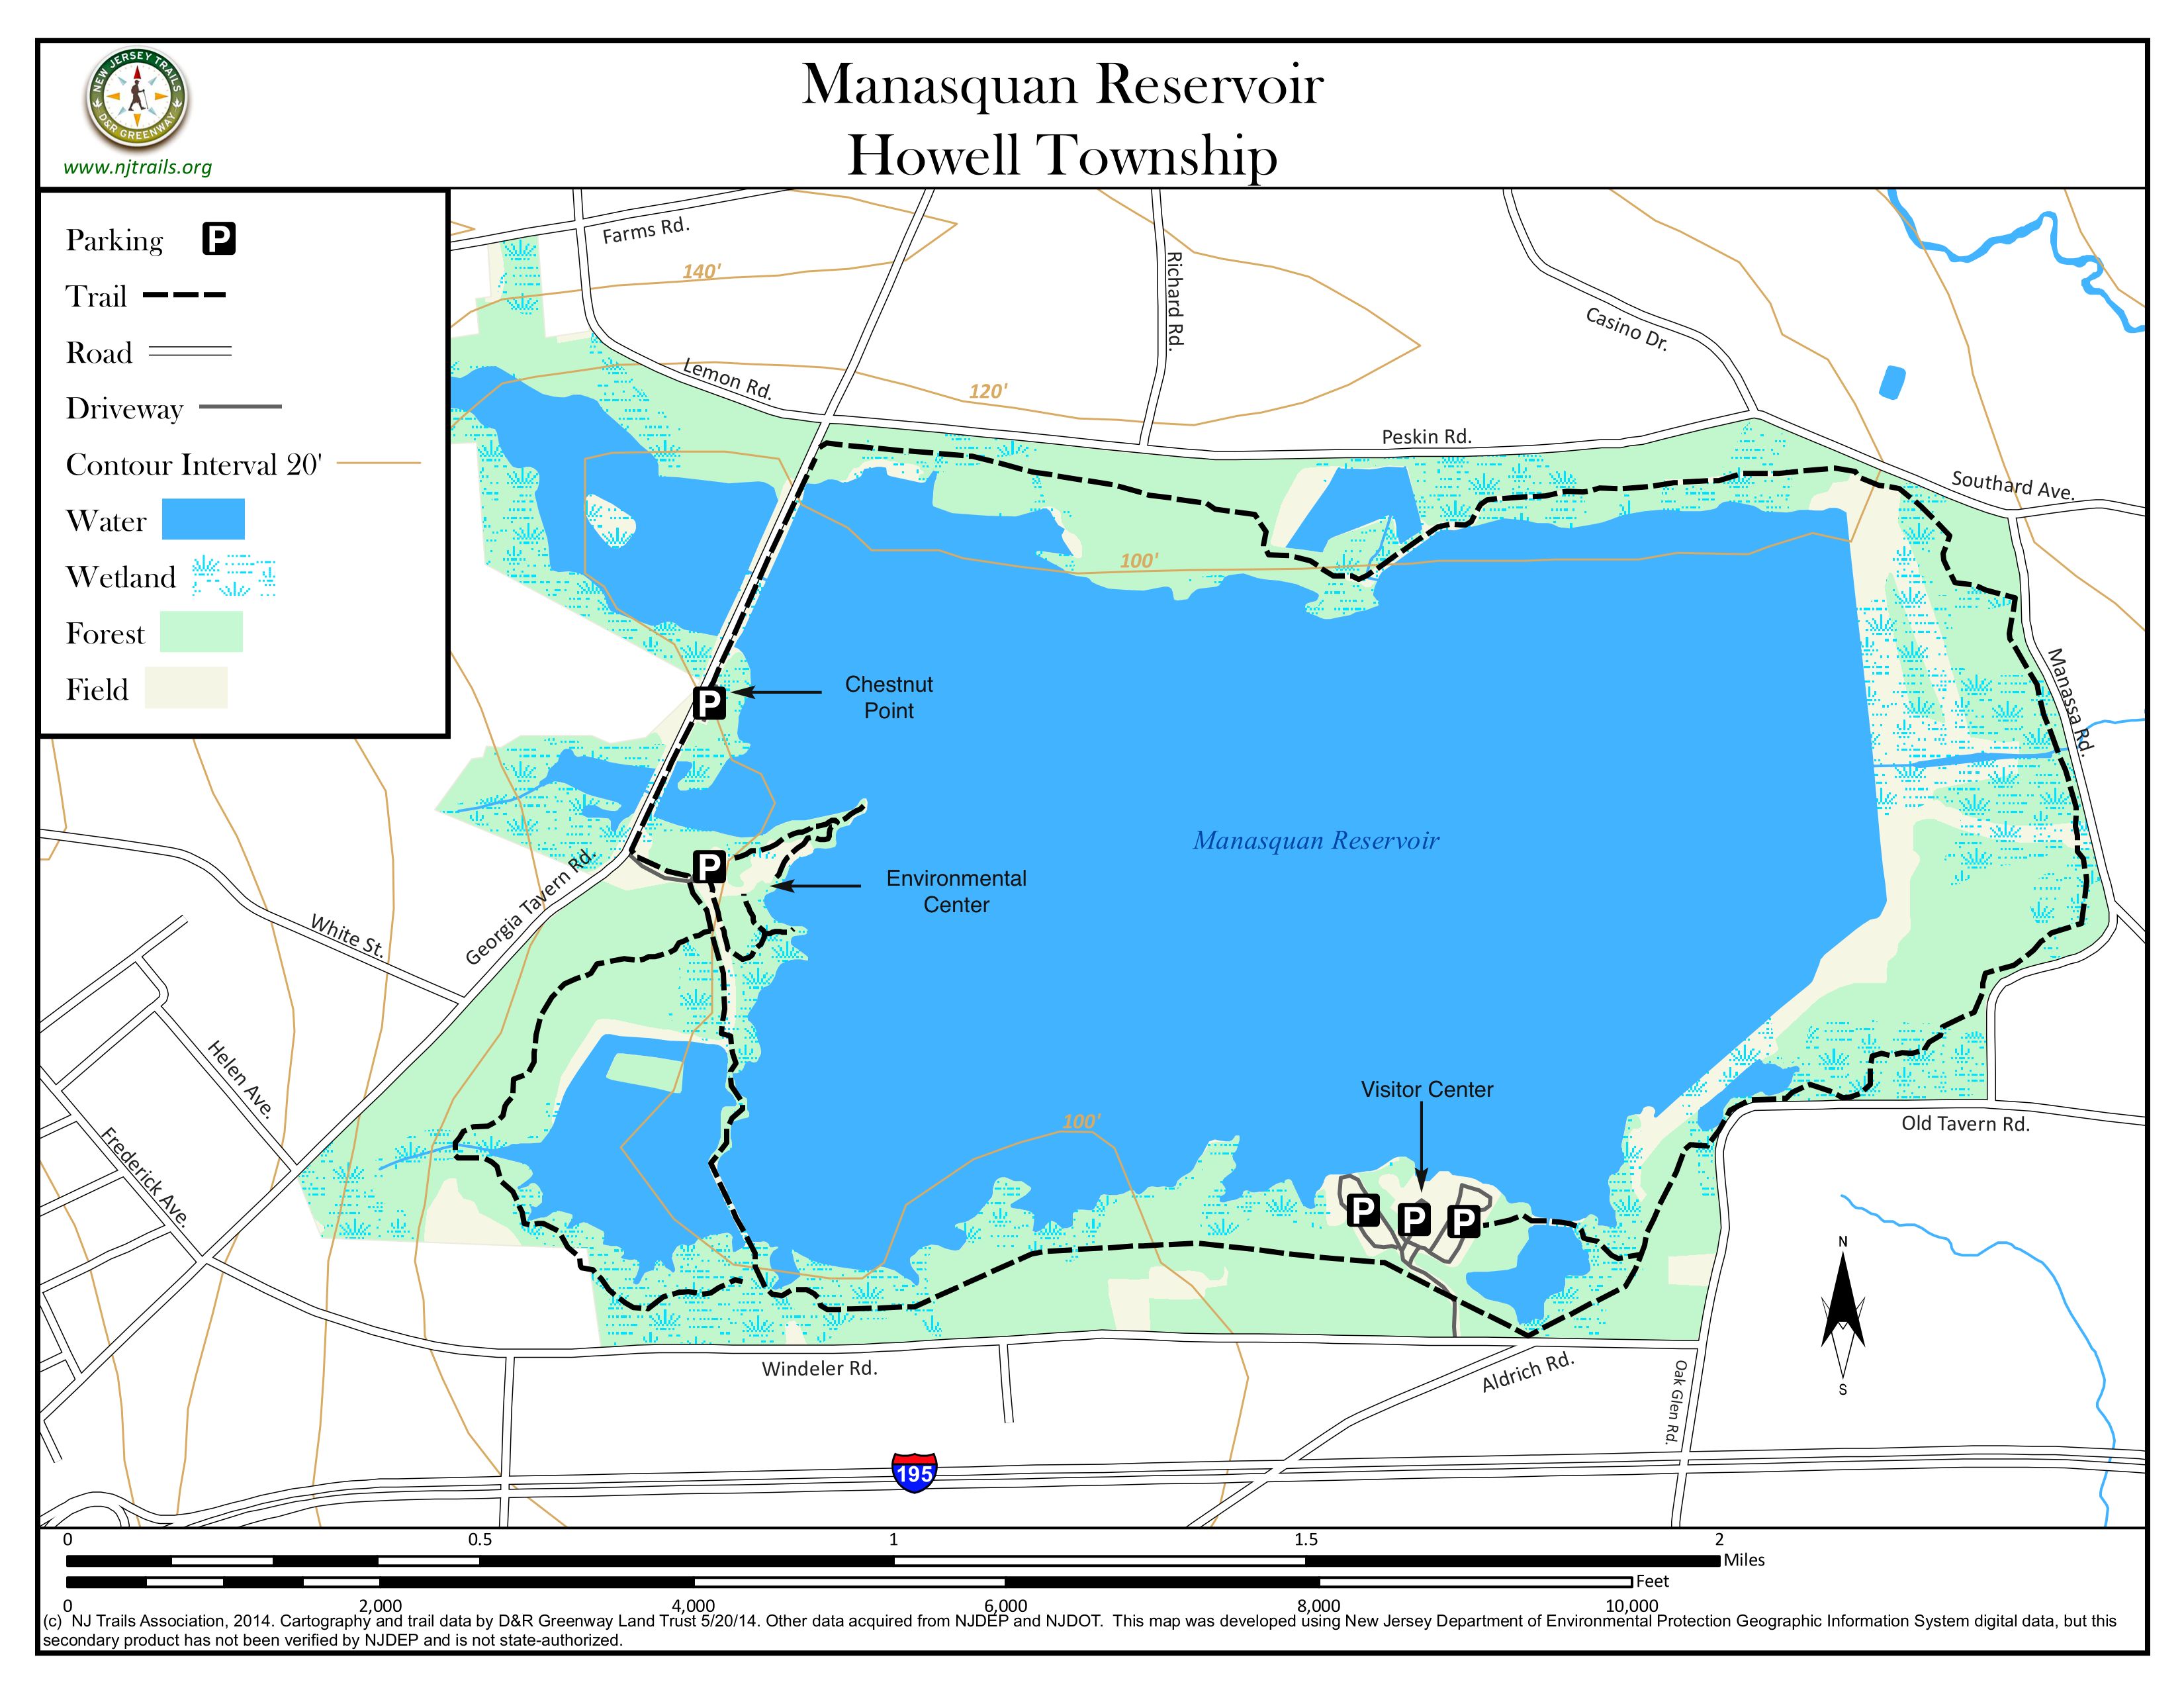 Manasquan Reservoir